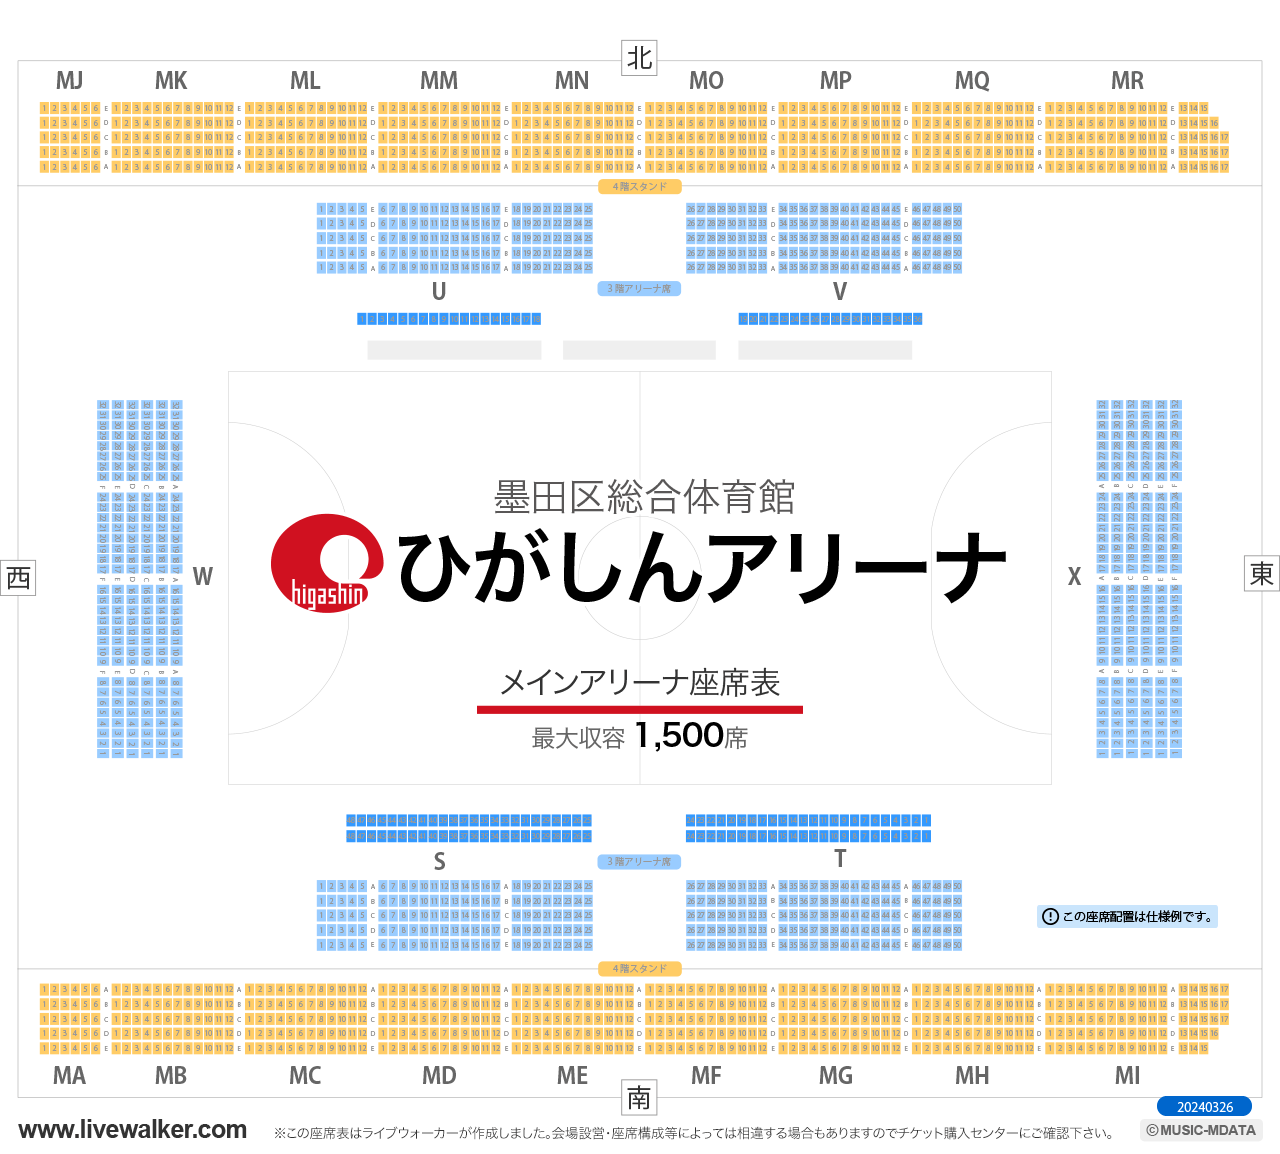 墨田区総合体育館メインアリーナの座席表